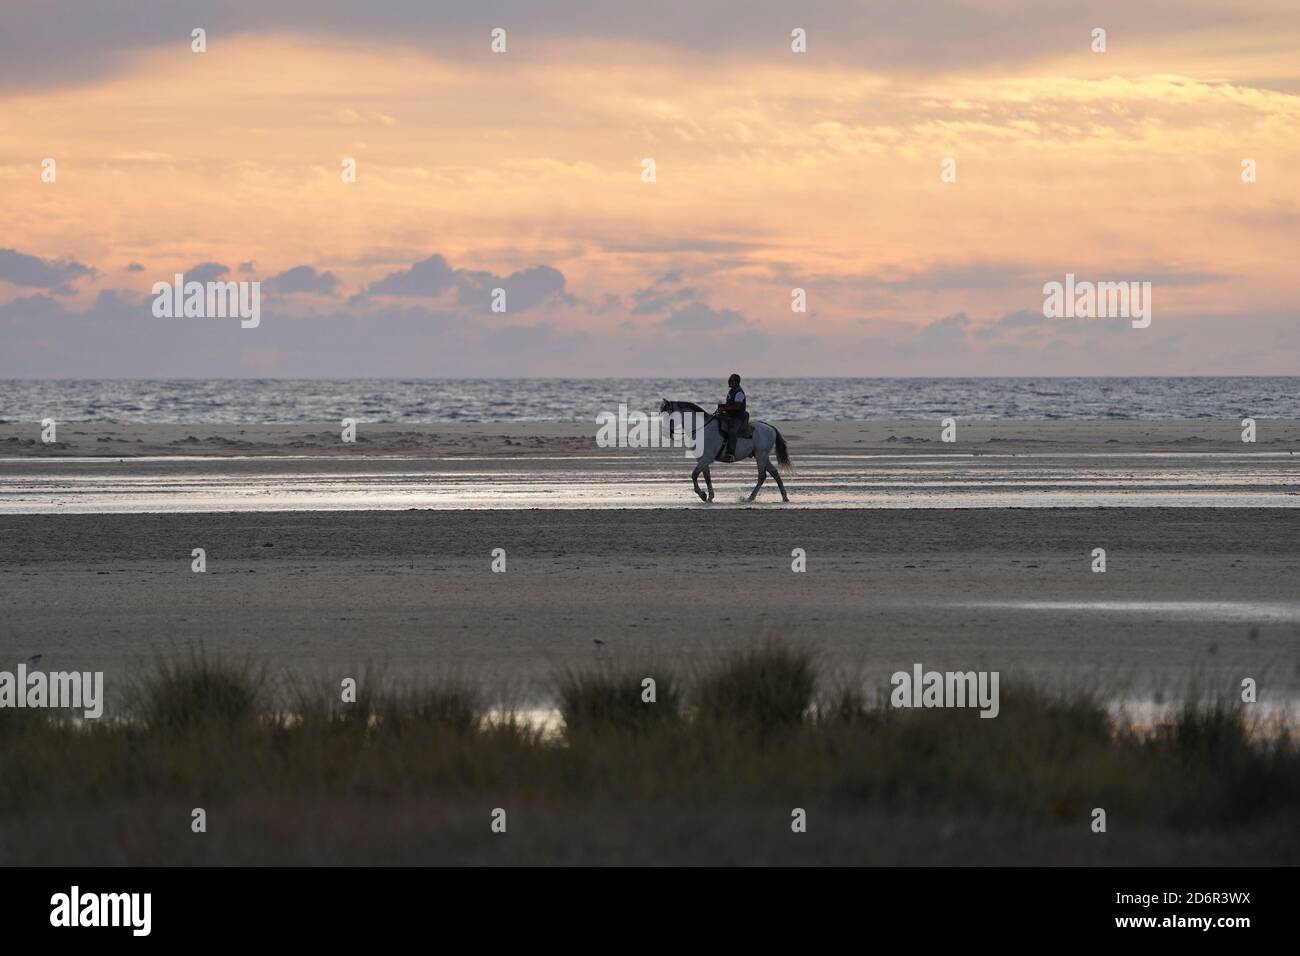 Un hombre a caballo en Playa de los Lances, playa cerca de tarifa, lagunas temporales durante la puesta de sol, Cádiz, Costa de la Luz, Andalucía, España. Foto de stock